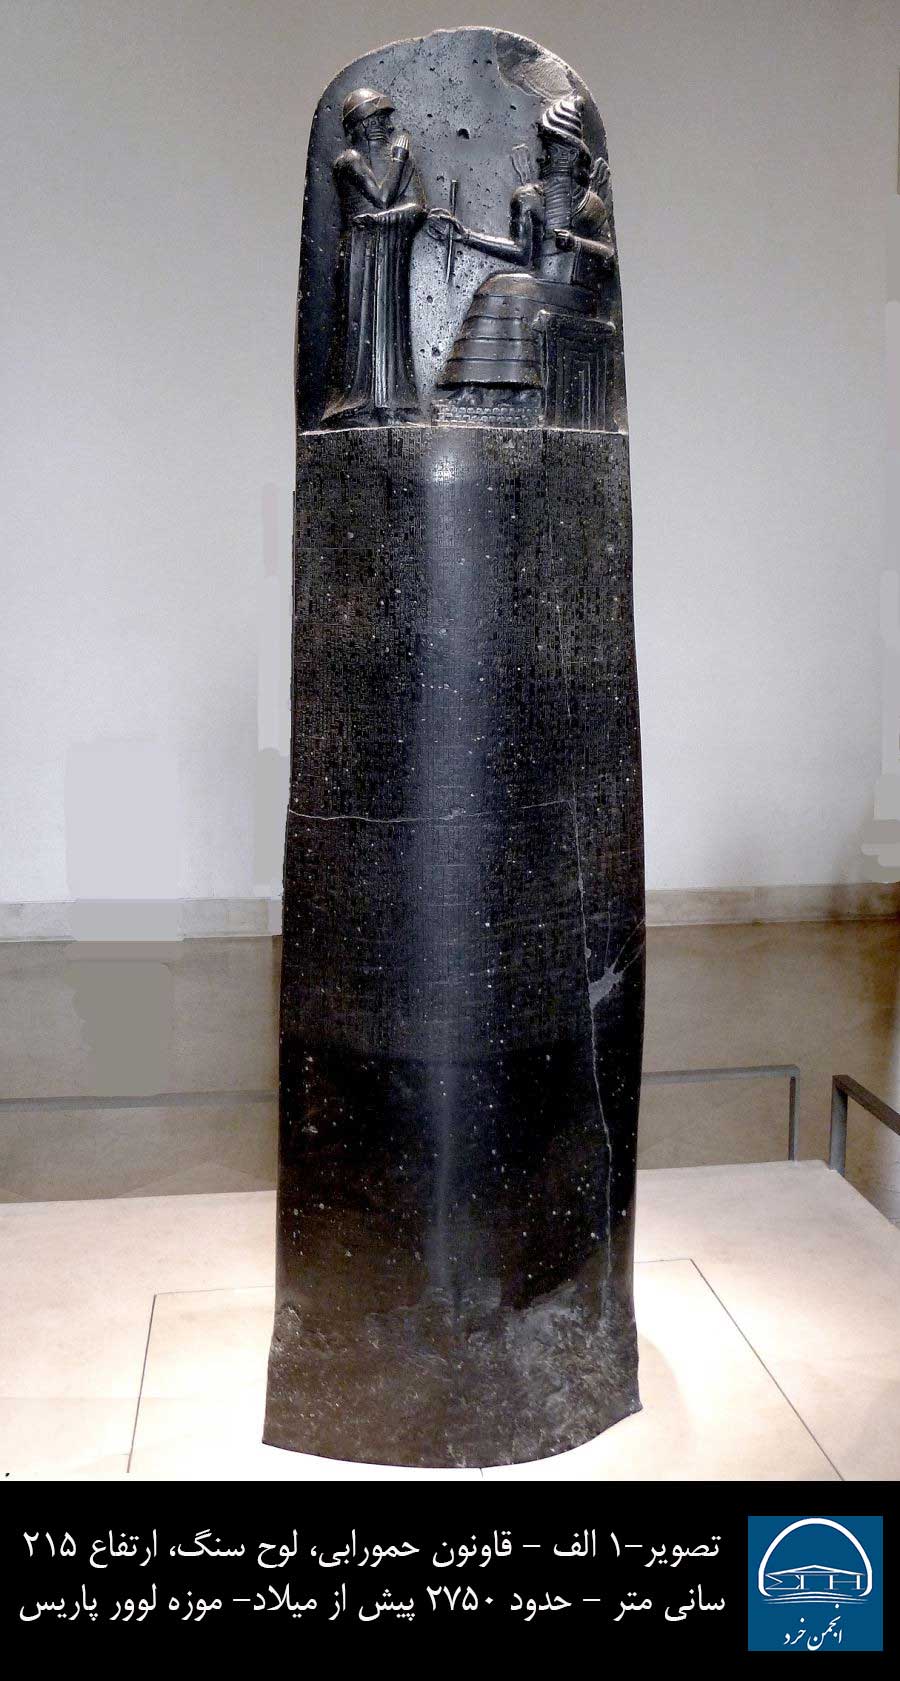  تصویر 1 - الف -قانون نامه حمورابی، لوح سنگی، 215 سانتیمتر، 2750 پیش از میلاد، موزه لوور پاریس